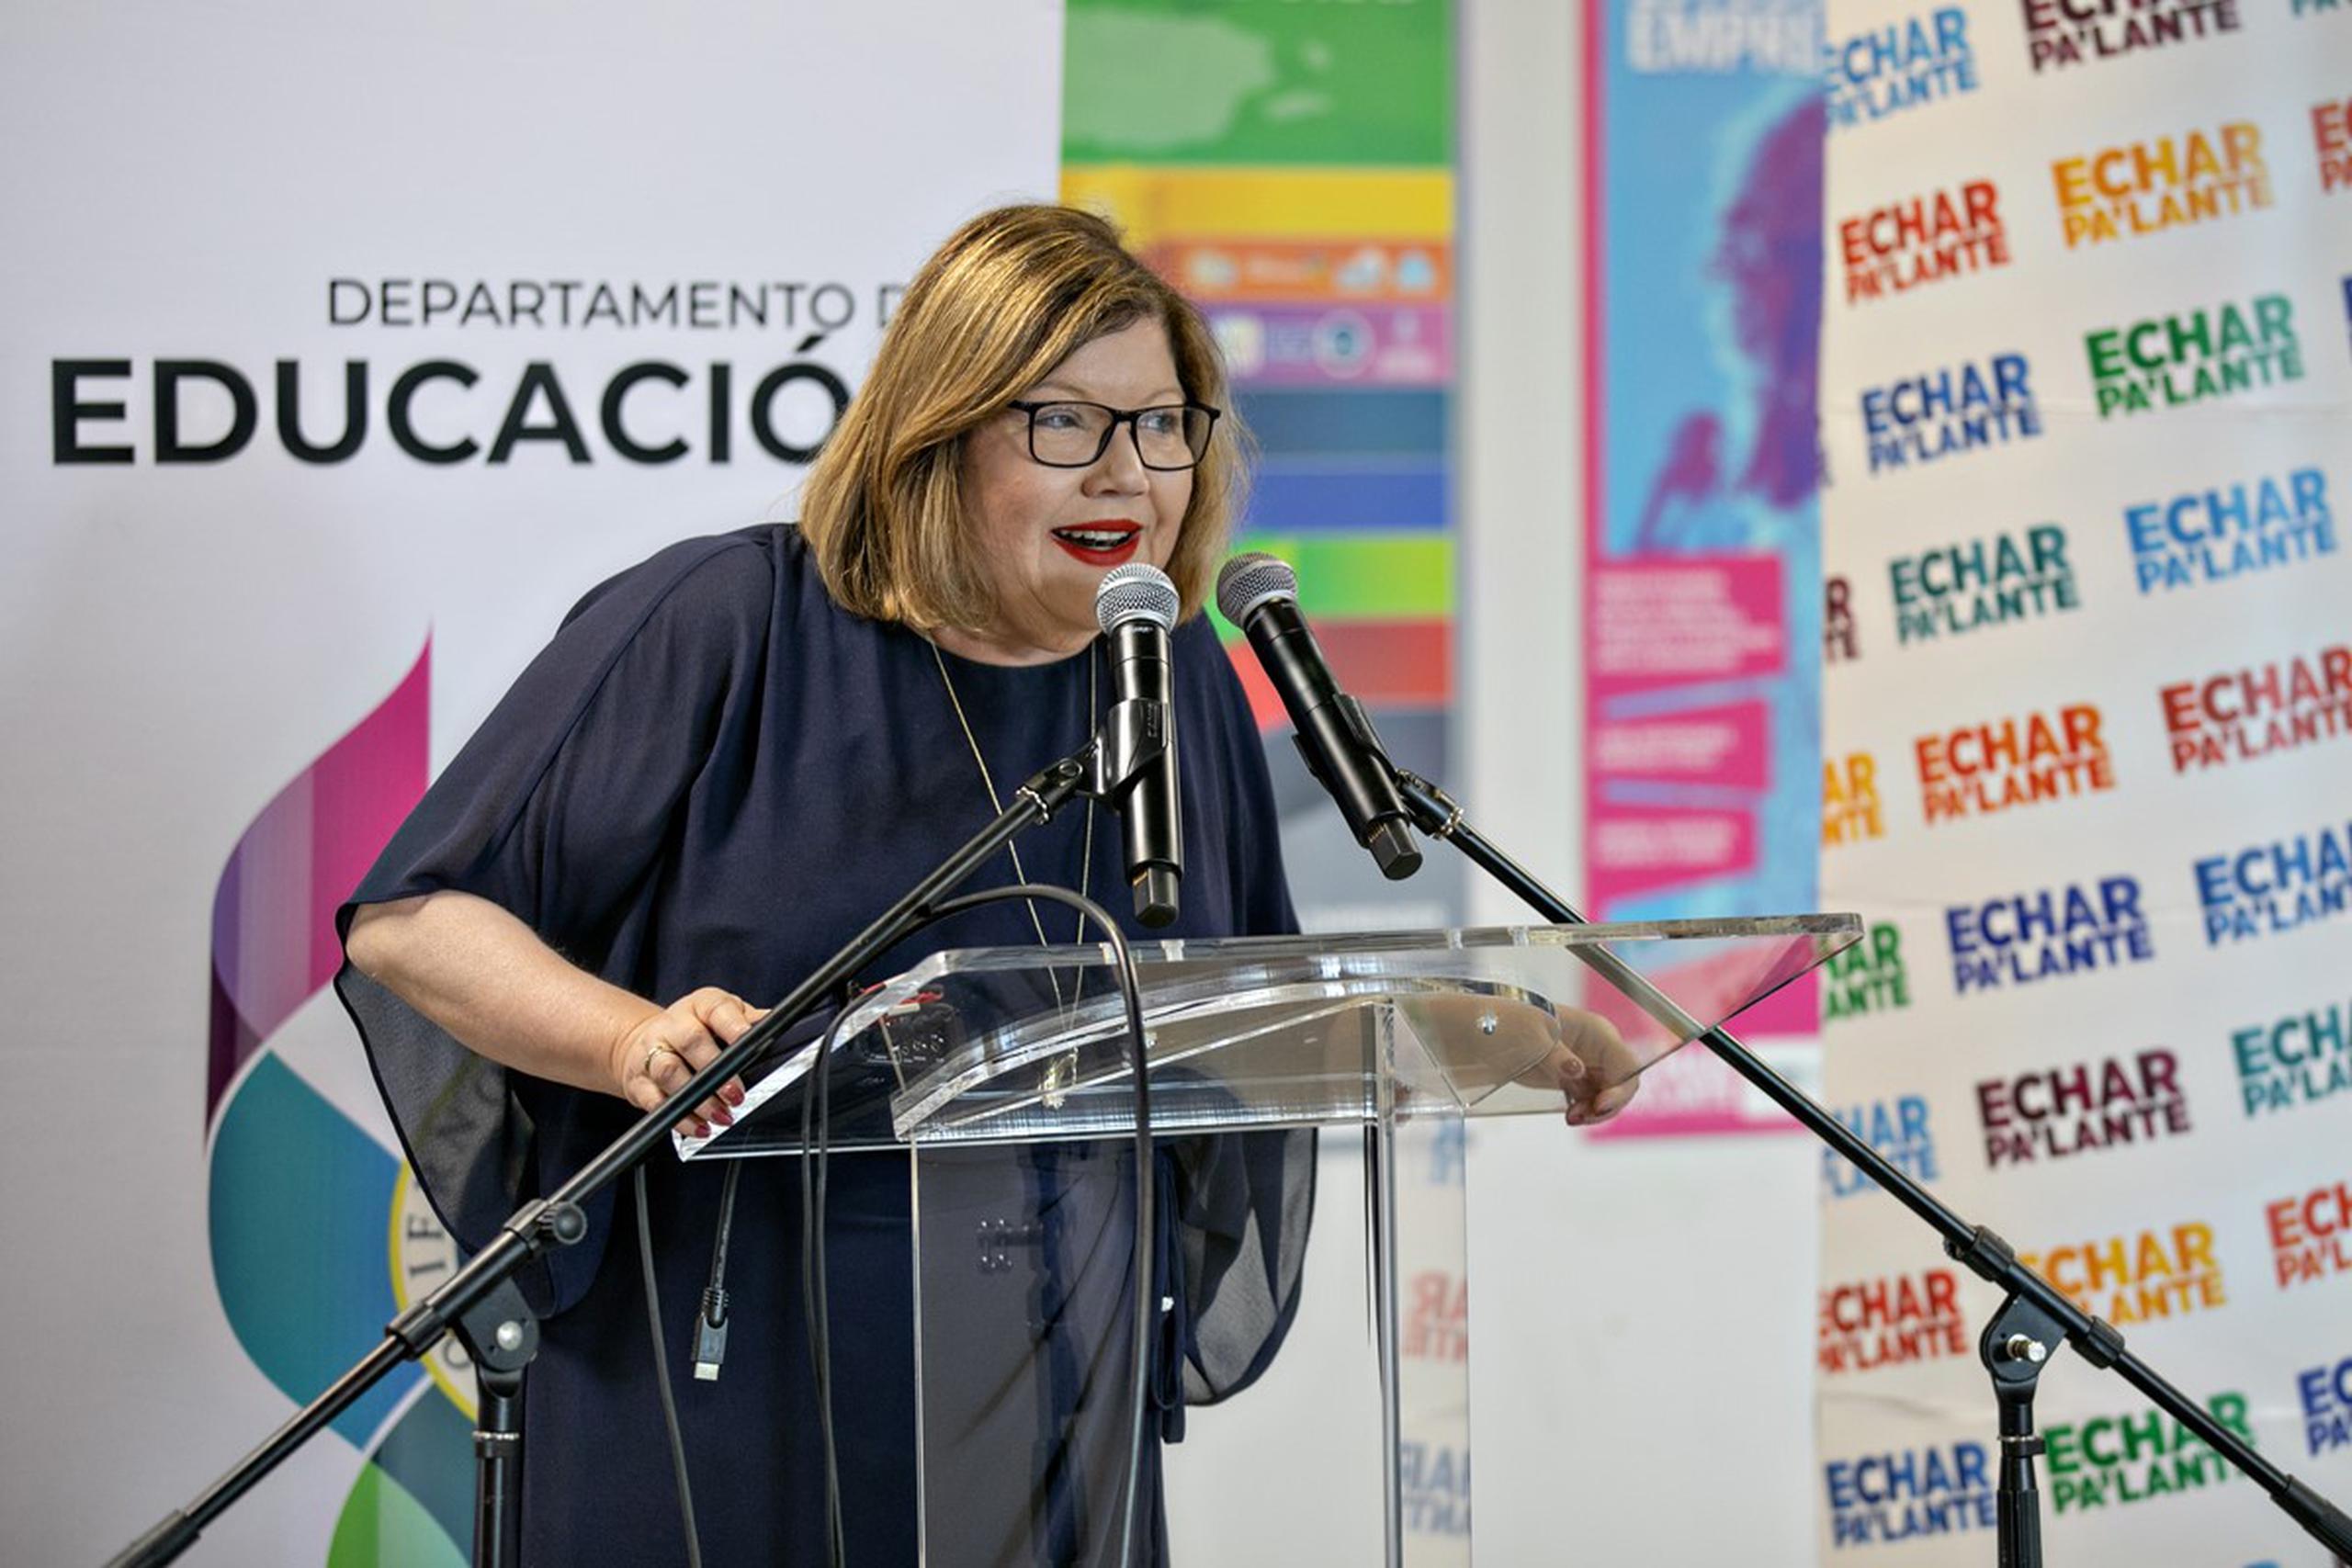 En la foto, Gloria Viscasillas, vicepresidenta de Programas de Desarrollo Económico de Popular y líder integrador de la Alianza Multisectorial Echar Pa’lante.